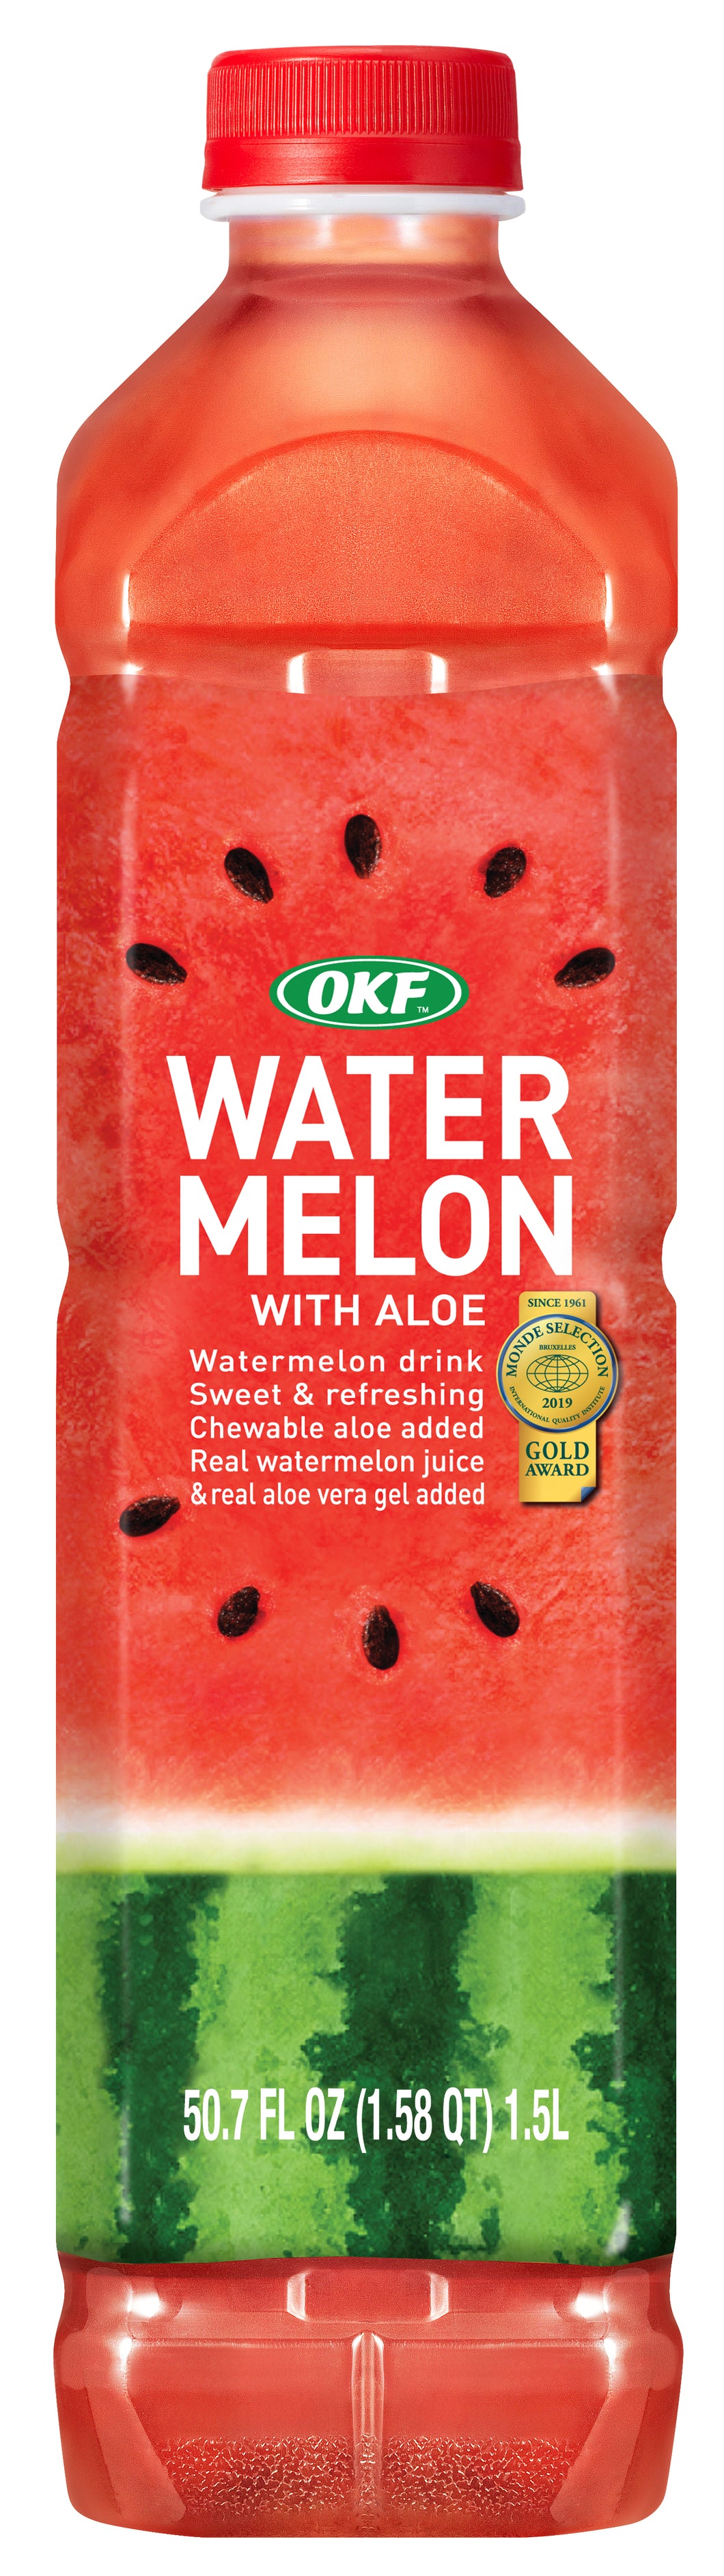 Watermelon Drink 1.5L x 12